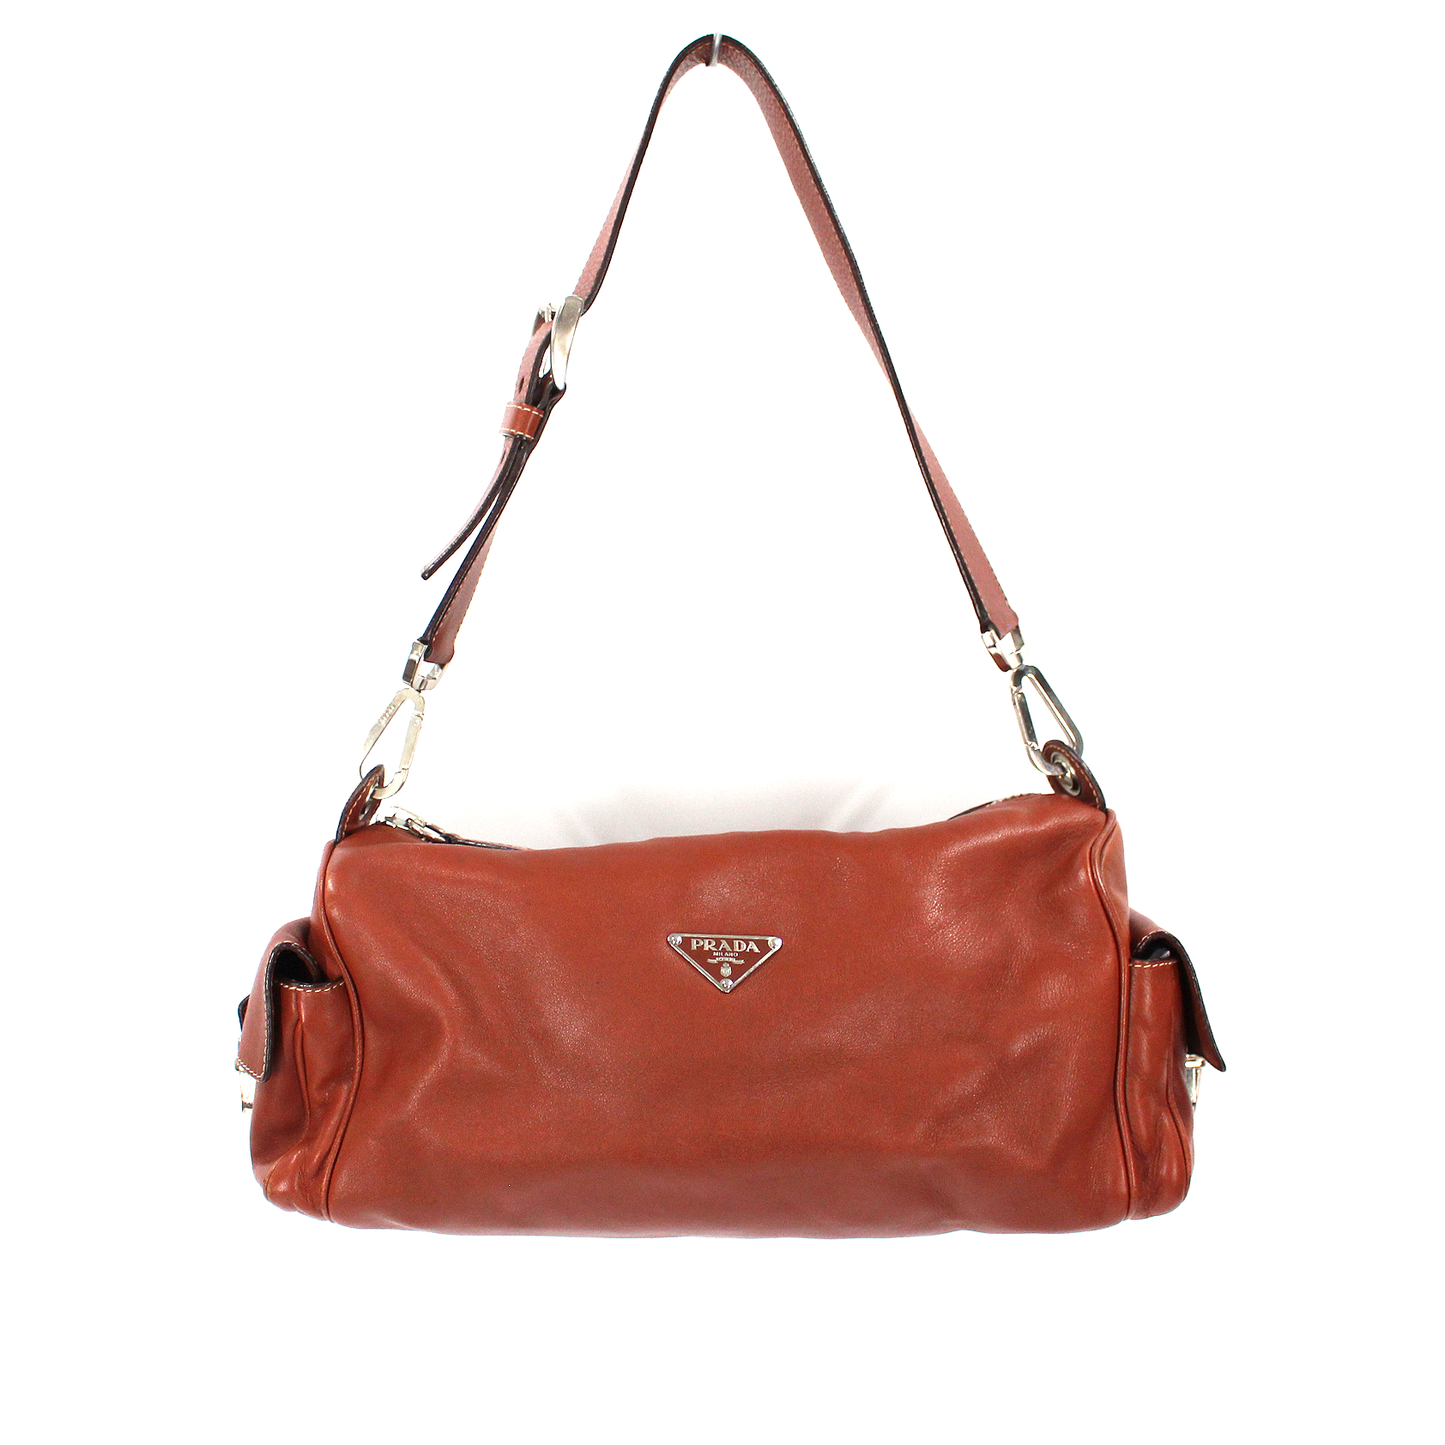 Prada Leather Hobo Handbag